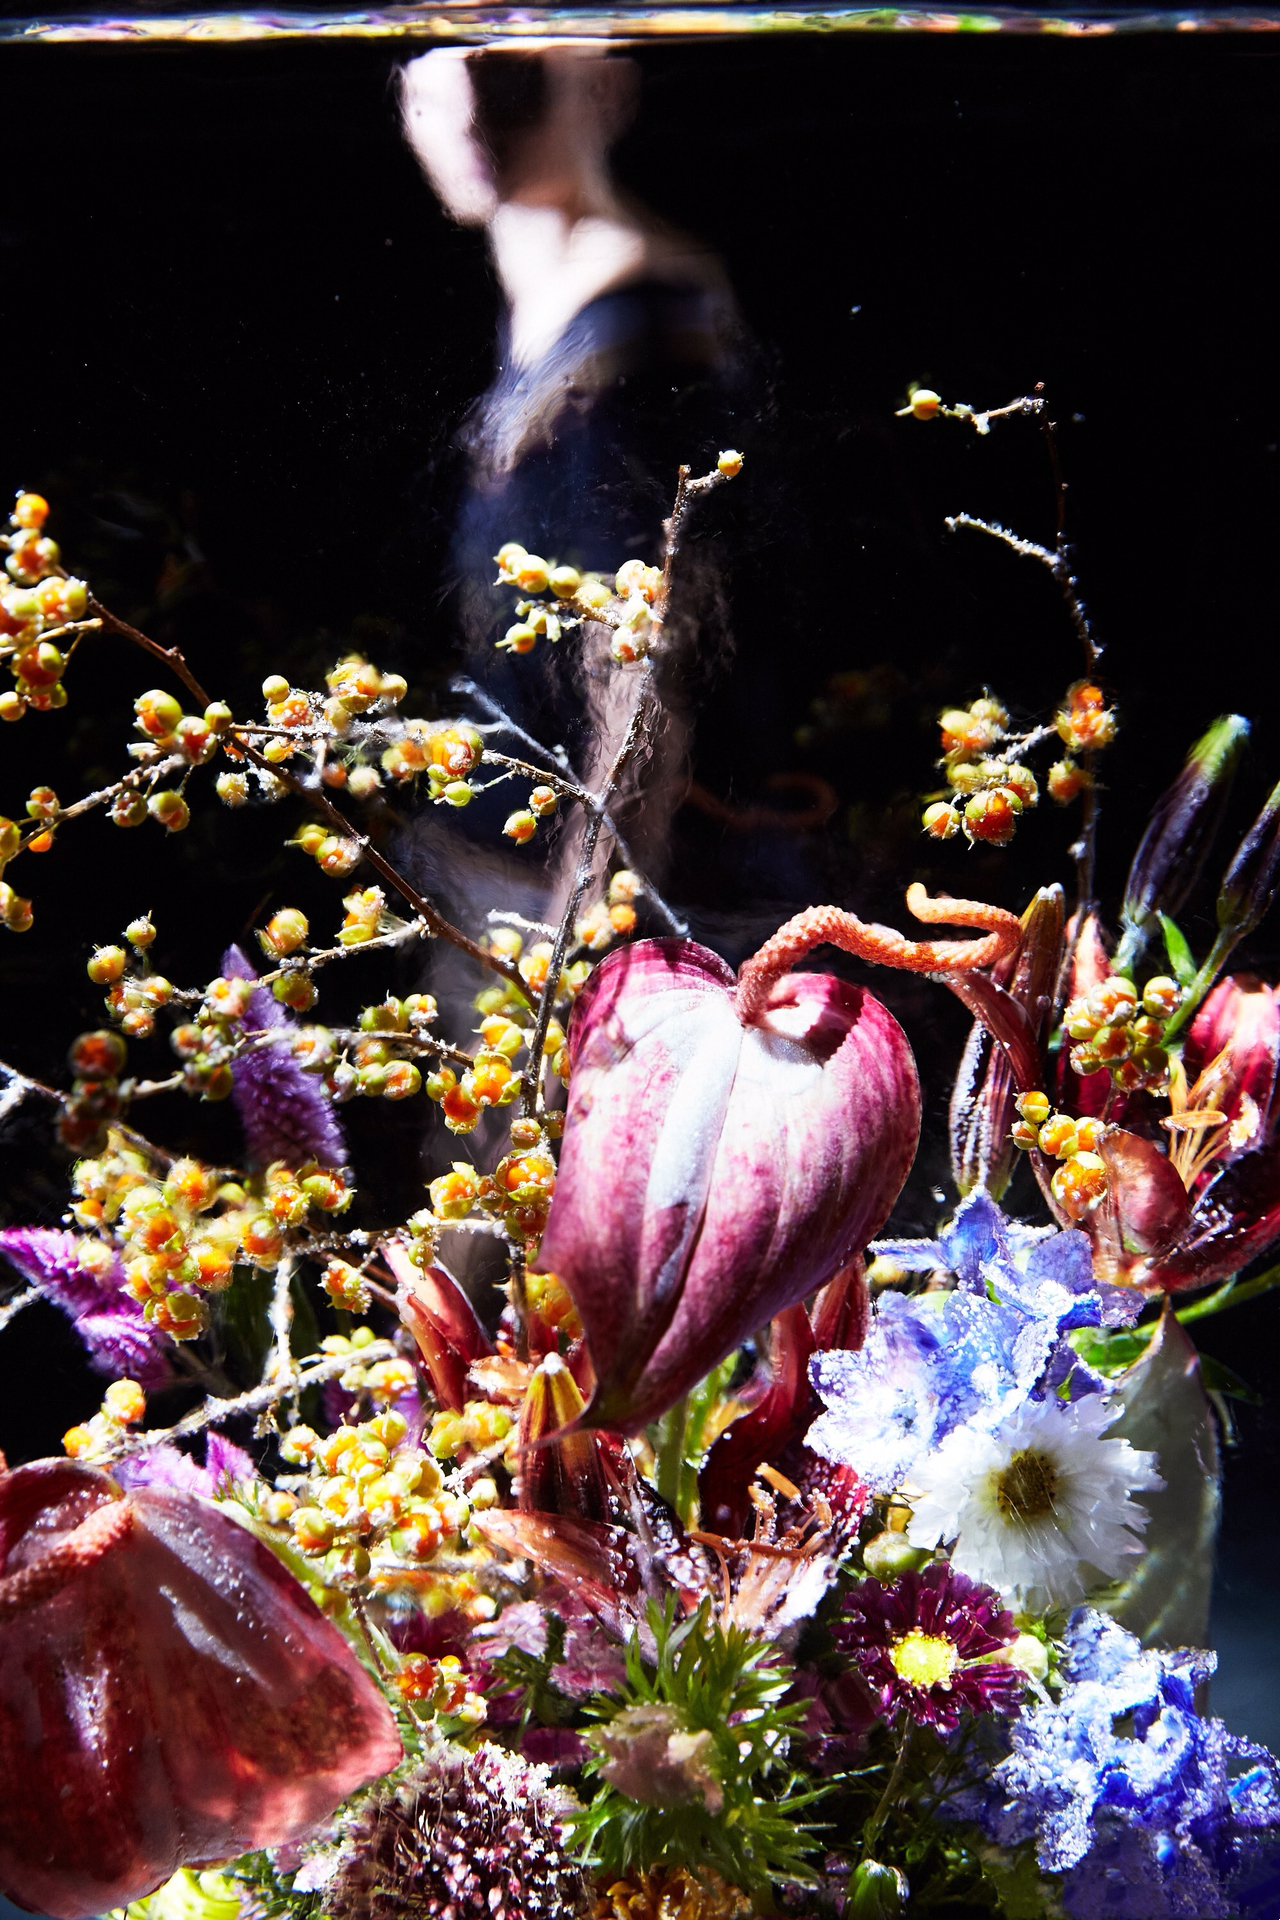 冰封花卉装置艺术·绽放奇幻之美